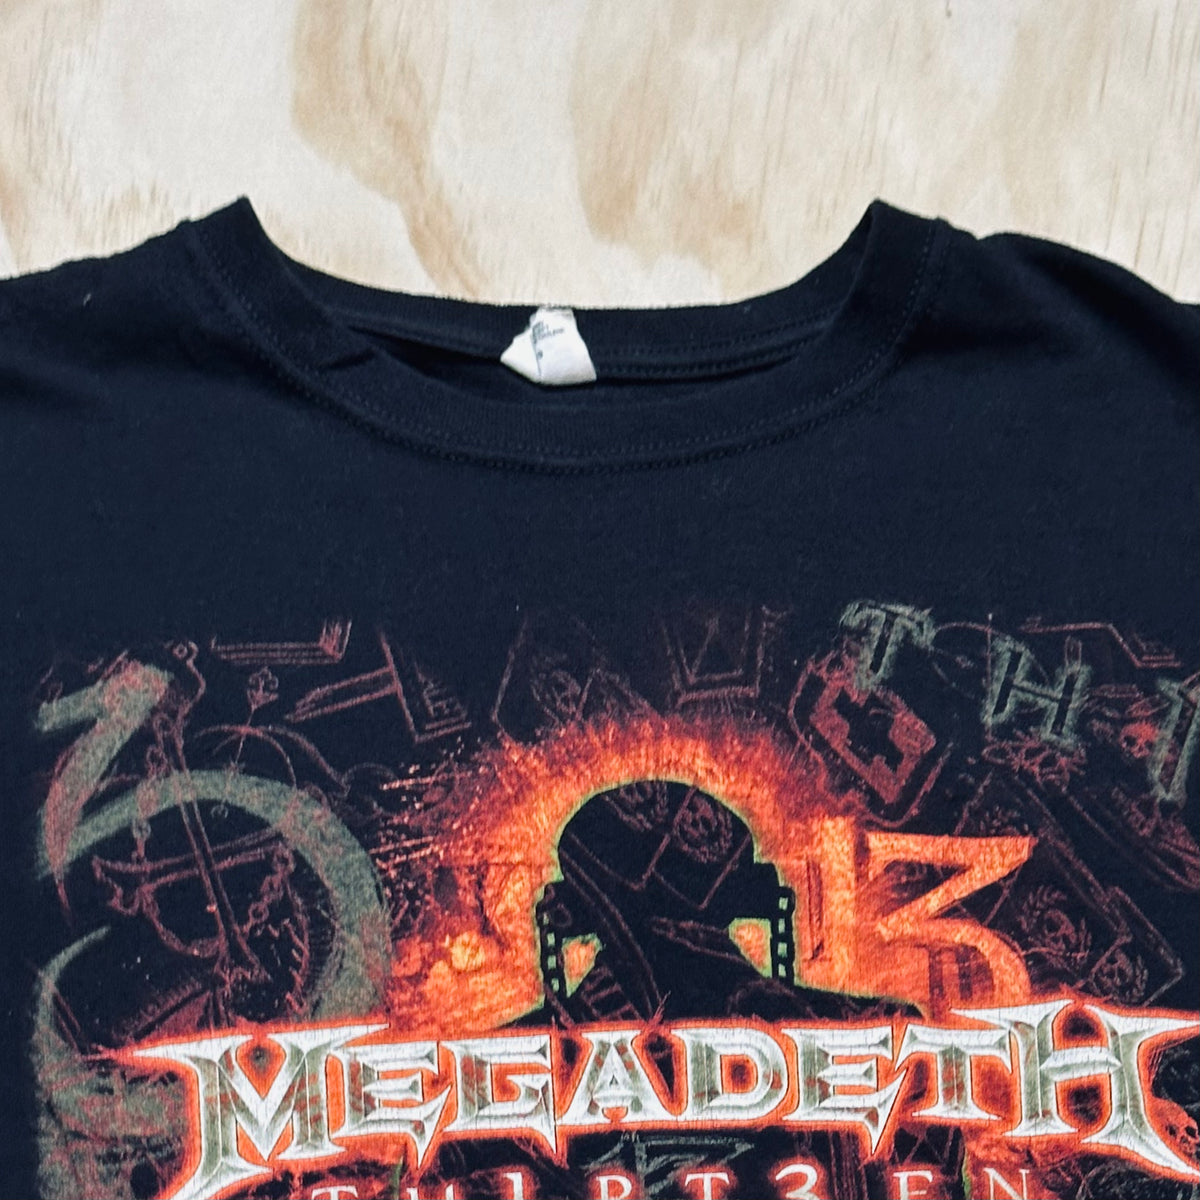 2011 Megadeath Th1rt3en 13 tour shirt